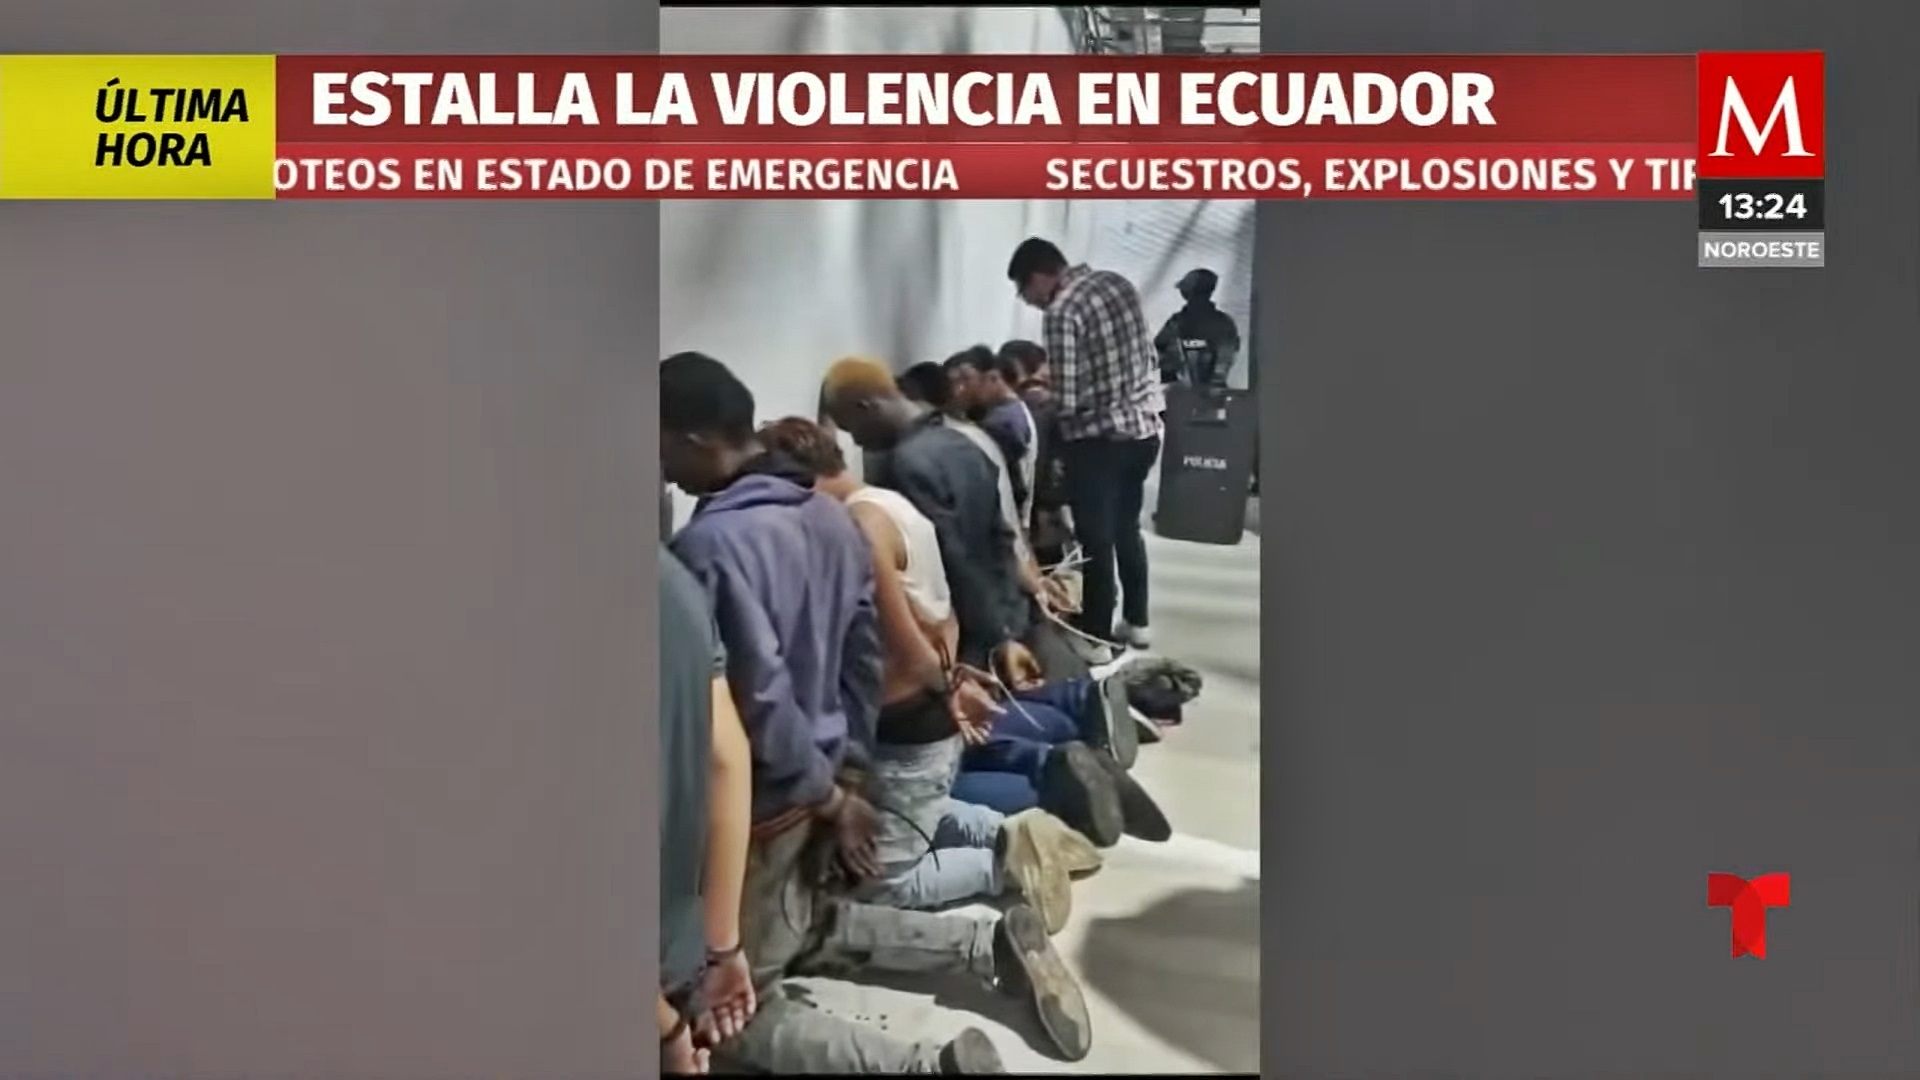 9일(현지시간) 에콰도르 최대 도시 과야킬에 있는 TC텔레비시온 방송국에 10여명의 무장 괴한이 침입, 총기와 수류탄으로 방송 진행자와 직원 등을 위협하는 장면이 생중계되는 사건이 발생한 후 현지 경찰이 방송국에서 용의자들을 제압하고 있다. 2024.1.9 에콰도르 경찰/노티시아스 텔레문도